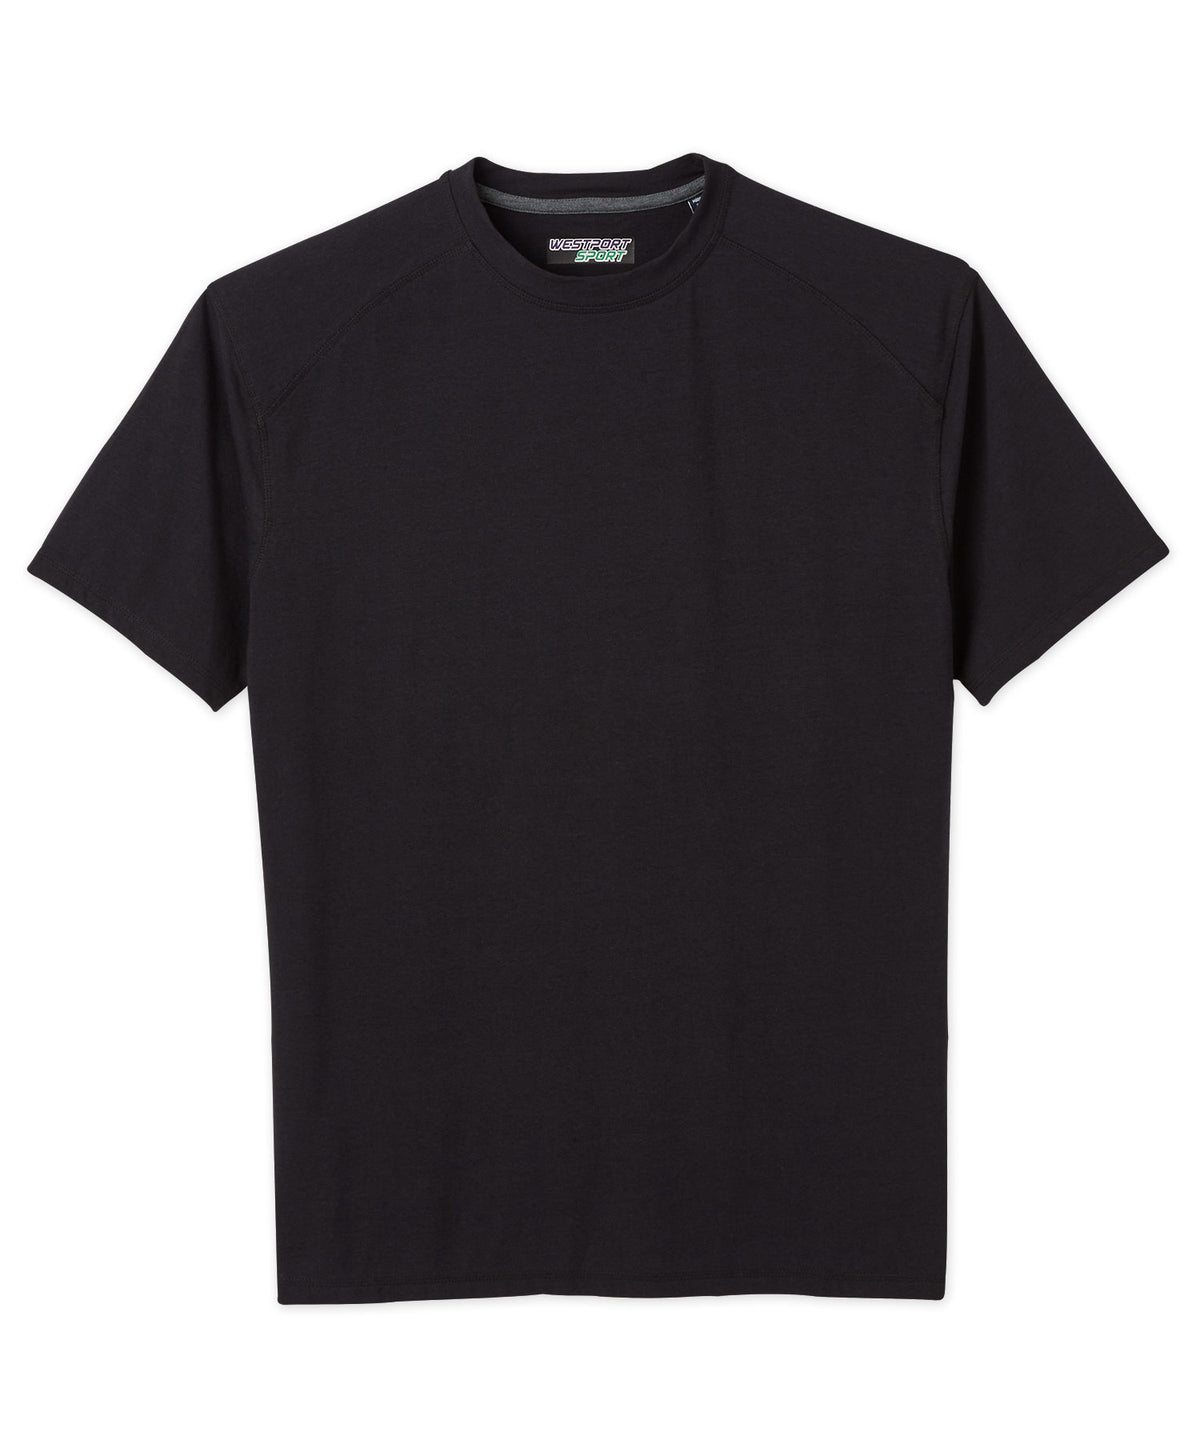 Westport Sport Bamboo Blend Performance Short Sleeve T-Shirt, Big & Tall